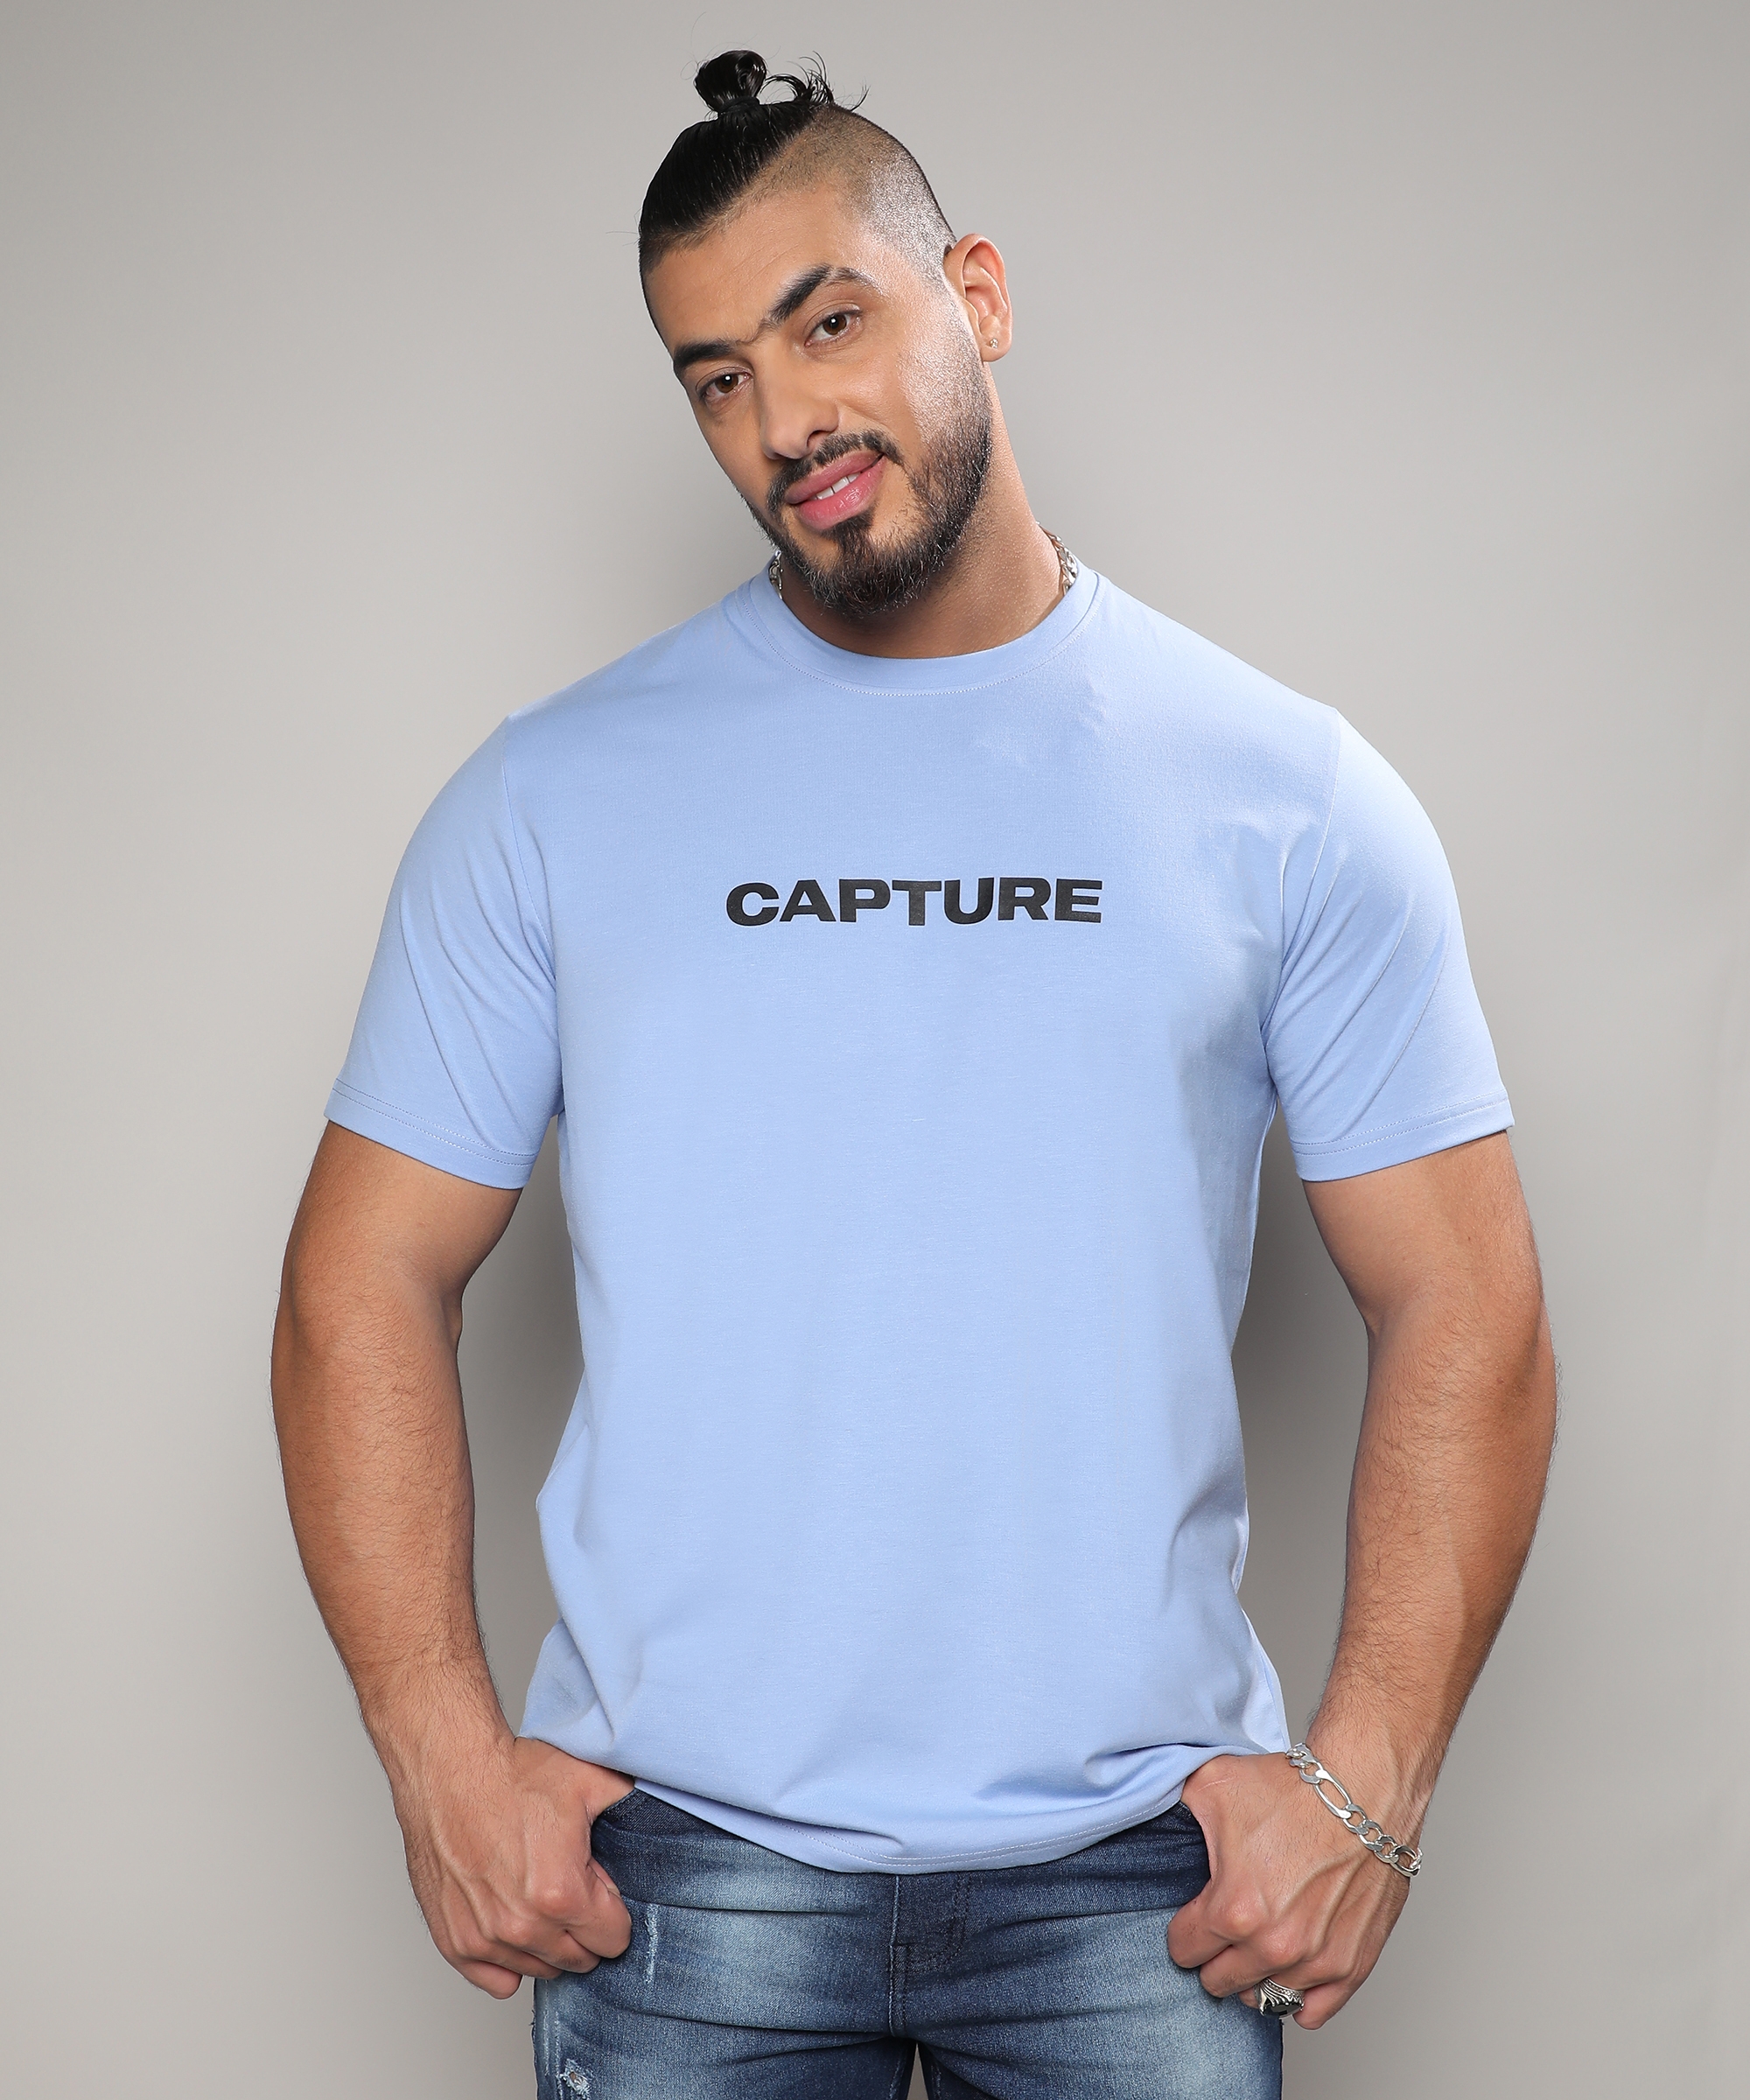 Instafab Plus | Men's Icy Blue Capture T-Shirt